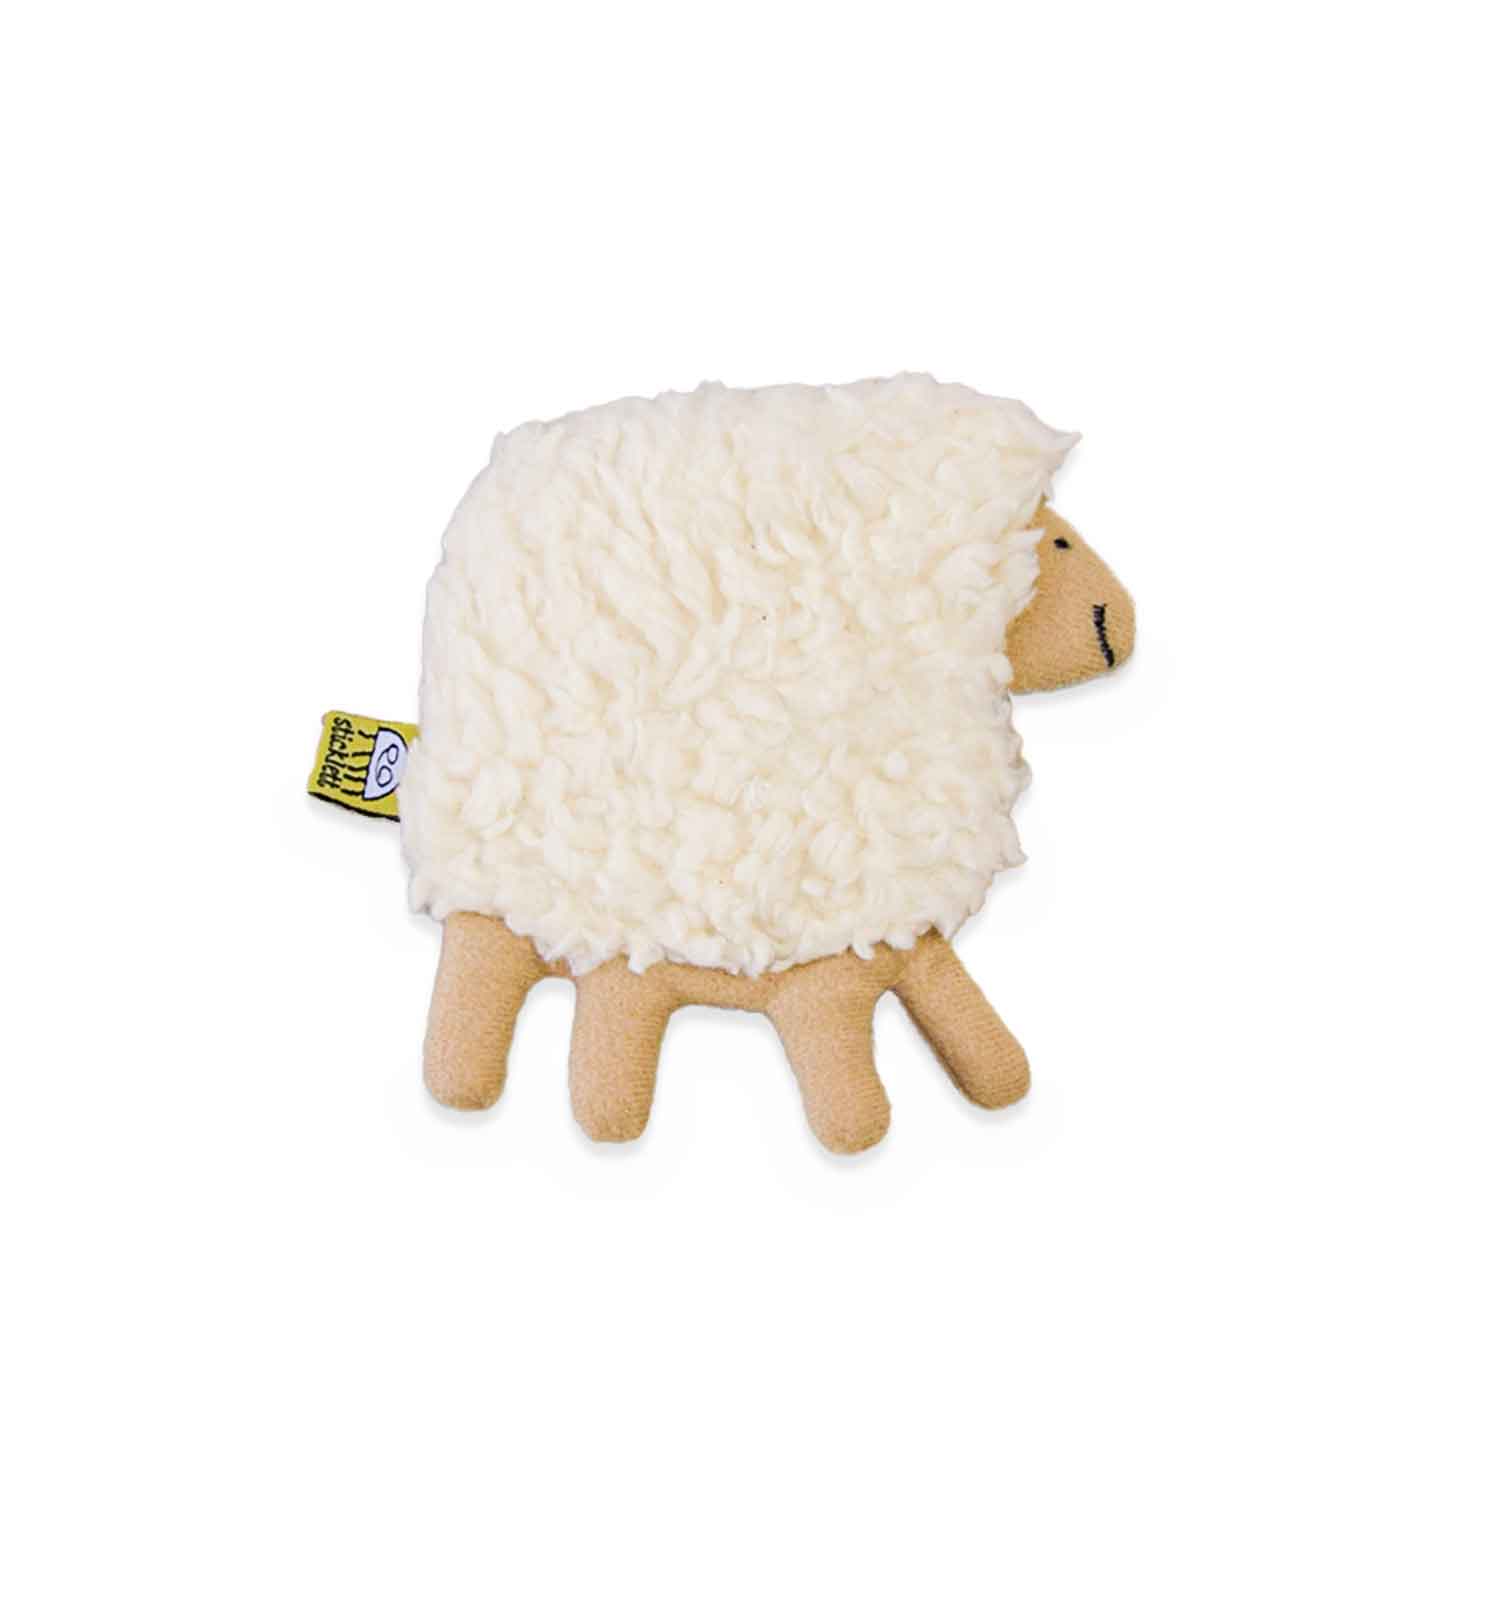 wohltuendes Wärmekissen Schaf in Plüsch weich angenehm haftet mit Kett am Bauch